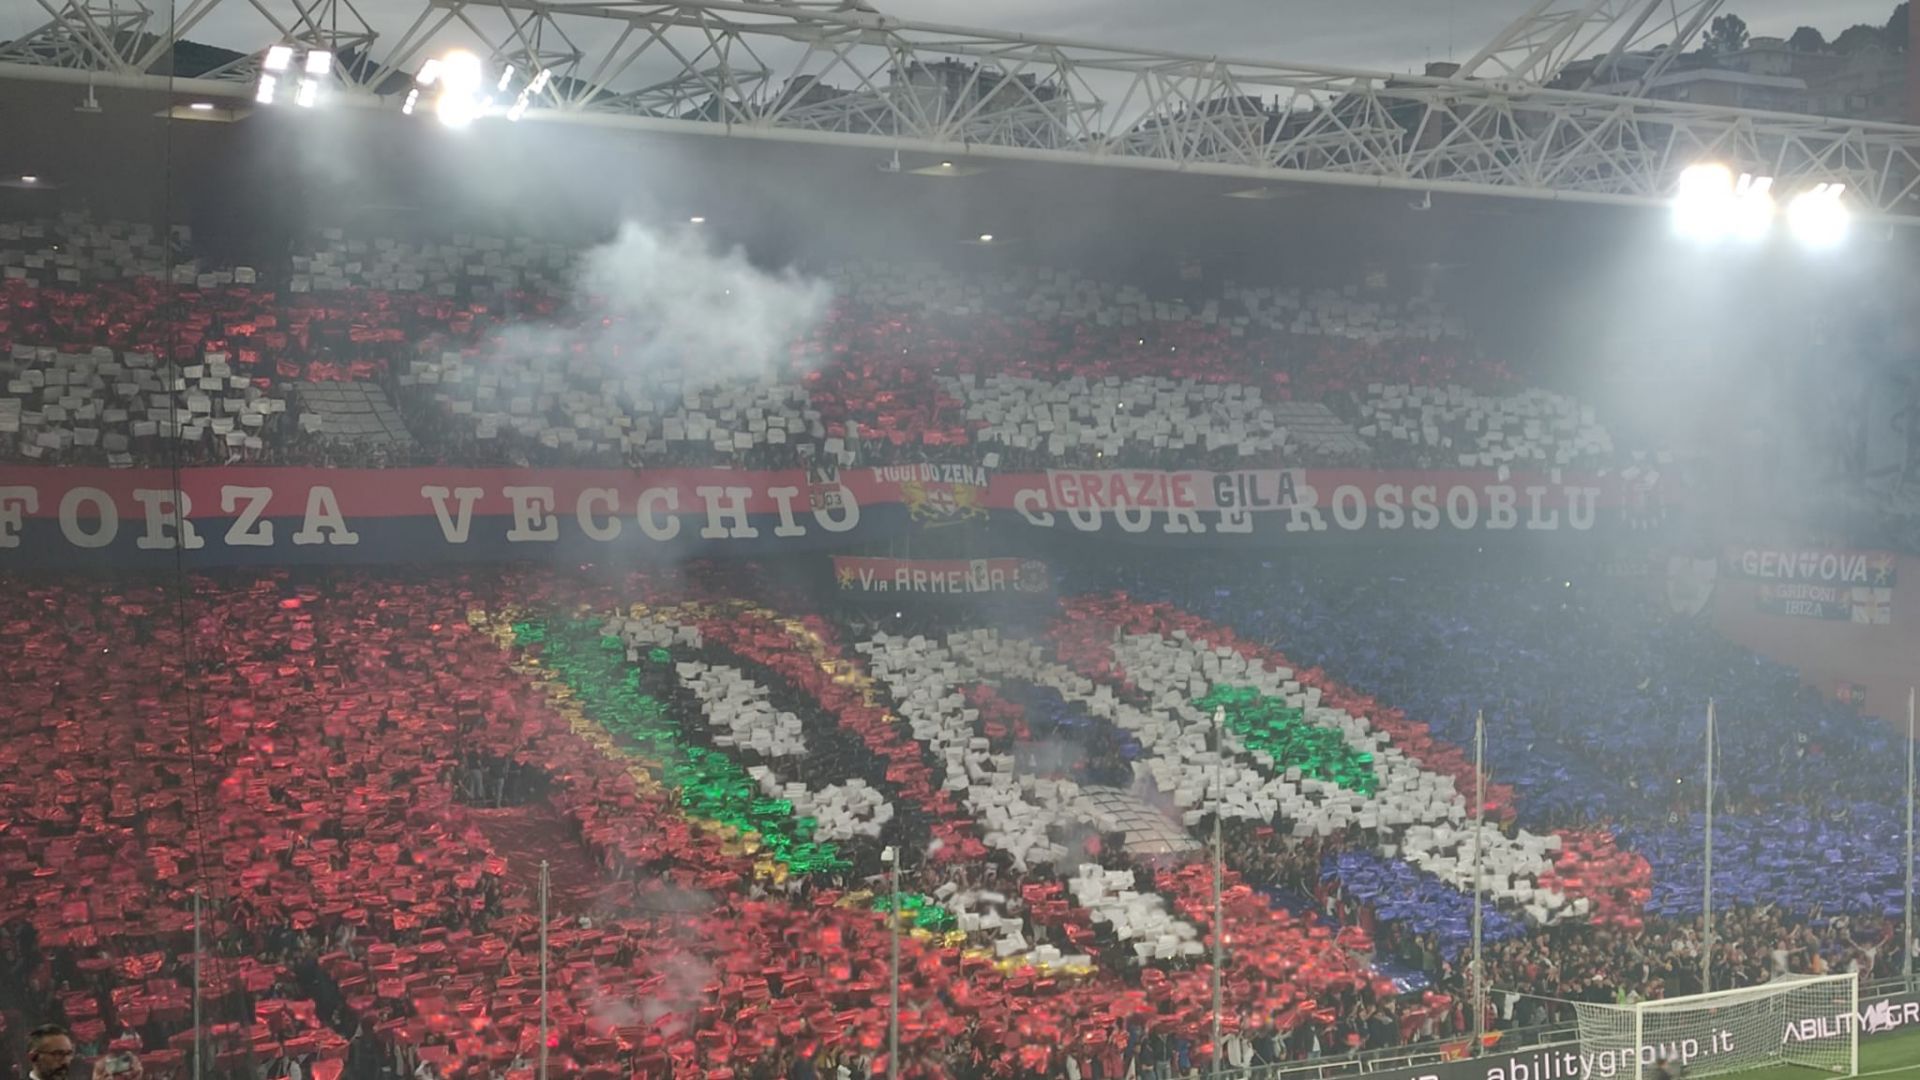 Genoa-Bari 4-3, Criscito entra e realizza il rigore all'ultimo minuto: parte la festa rossoblù